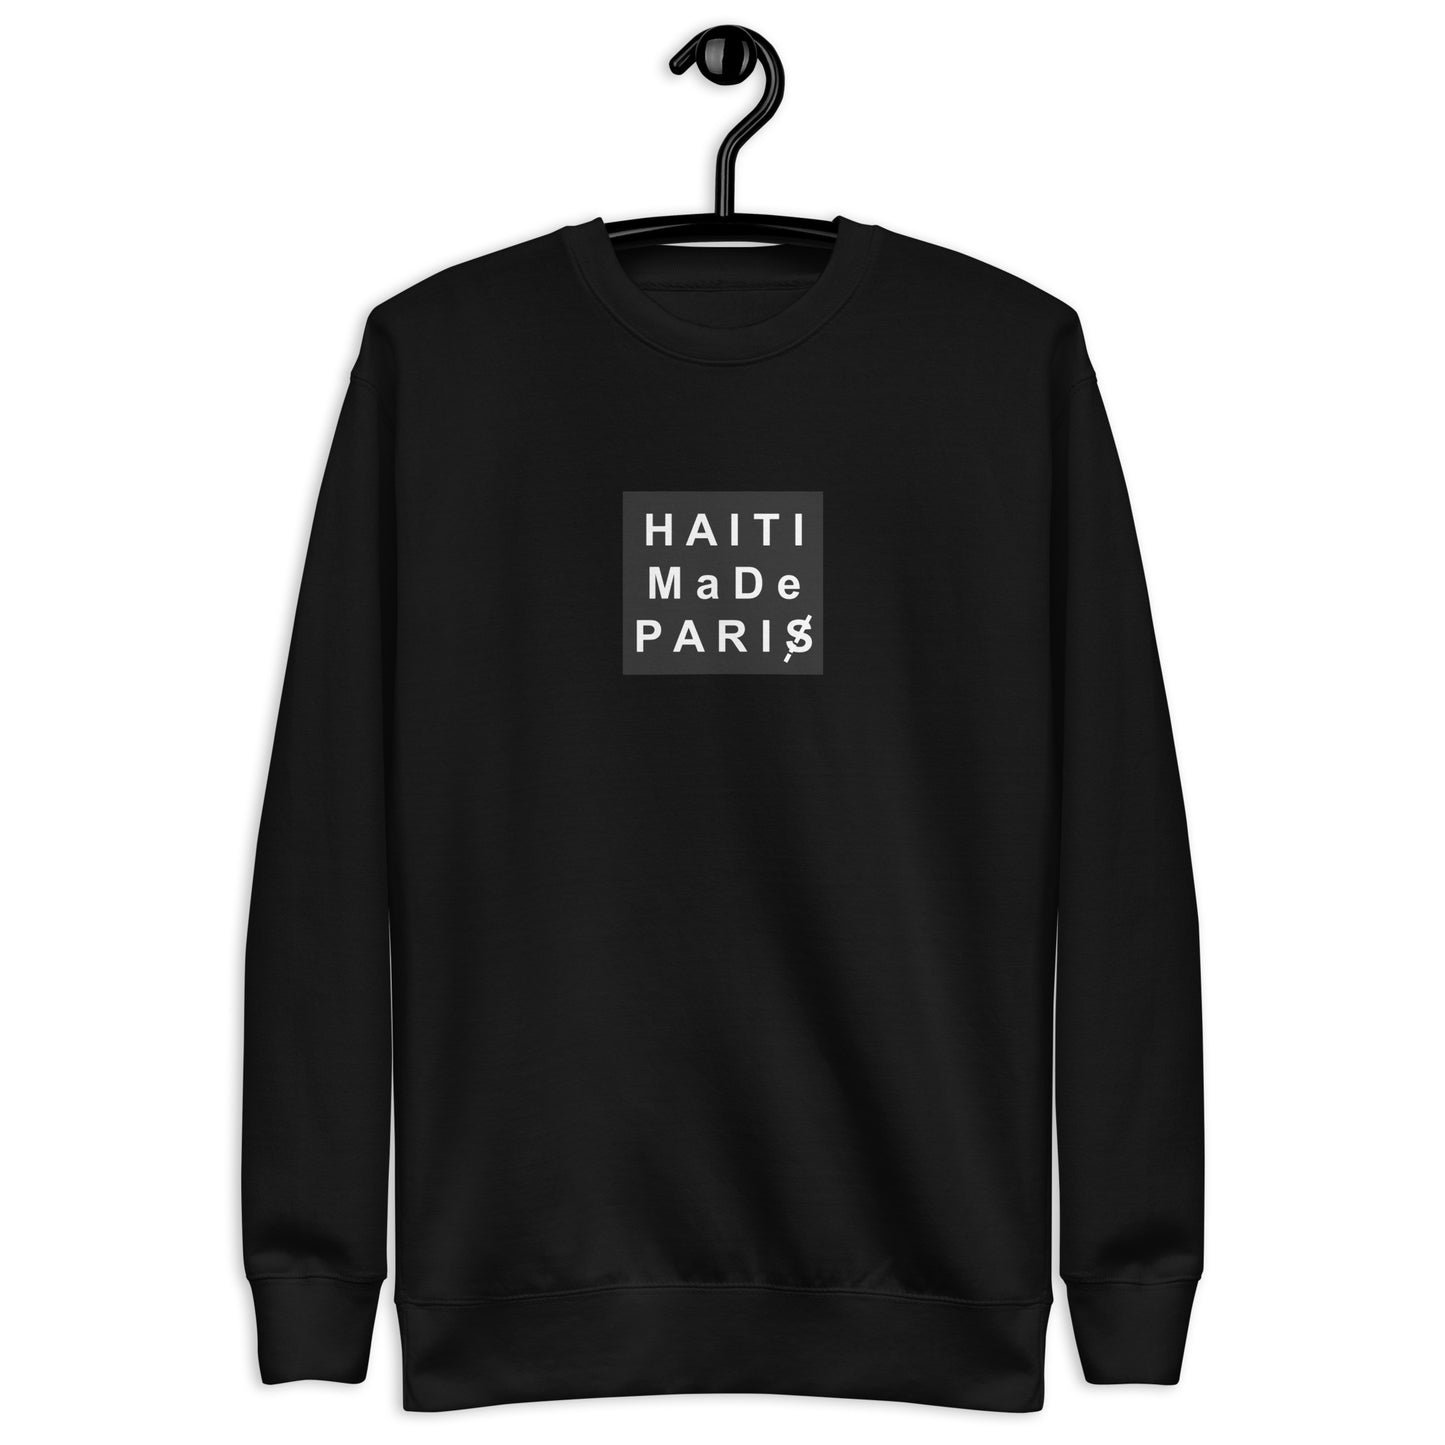 Haiti made Paris